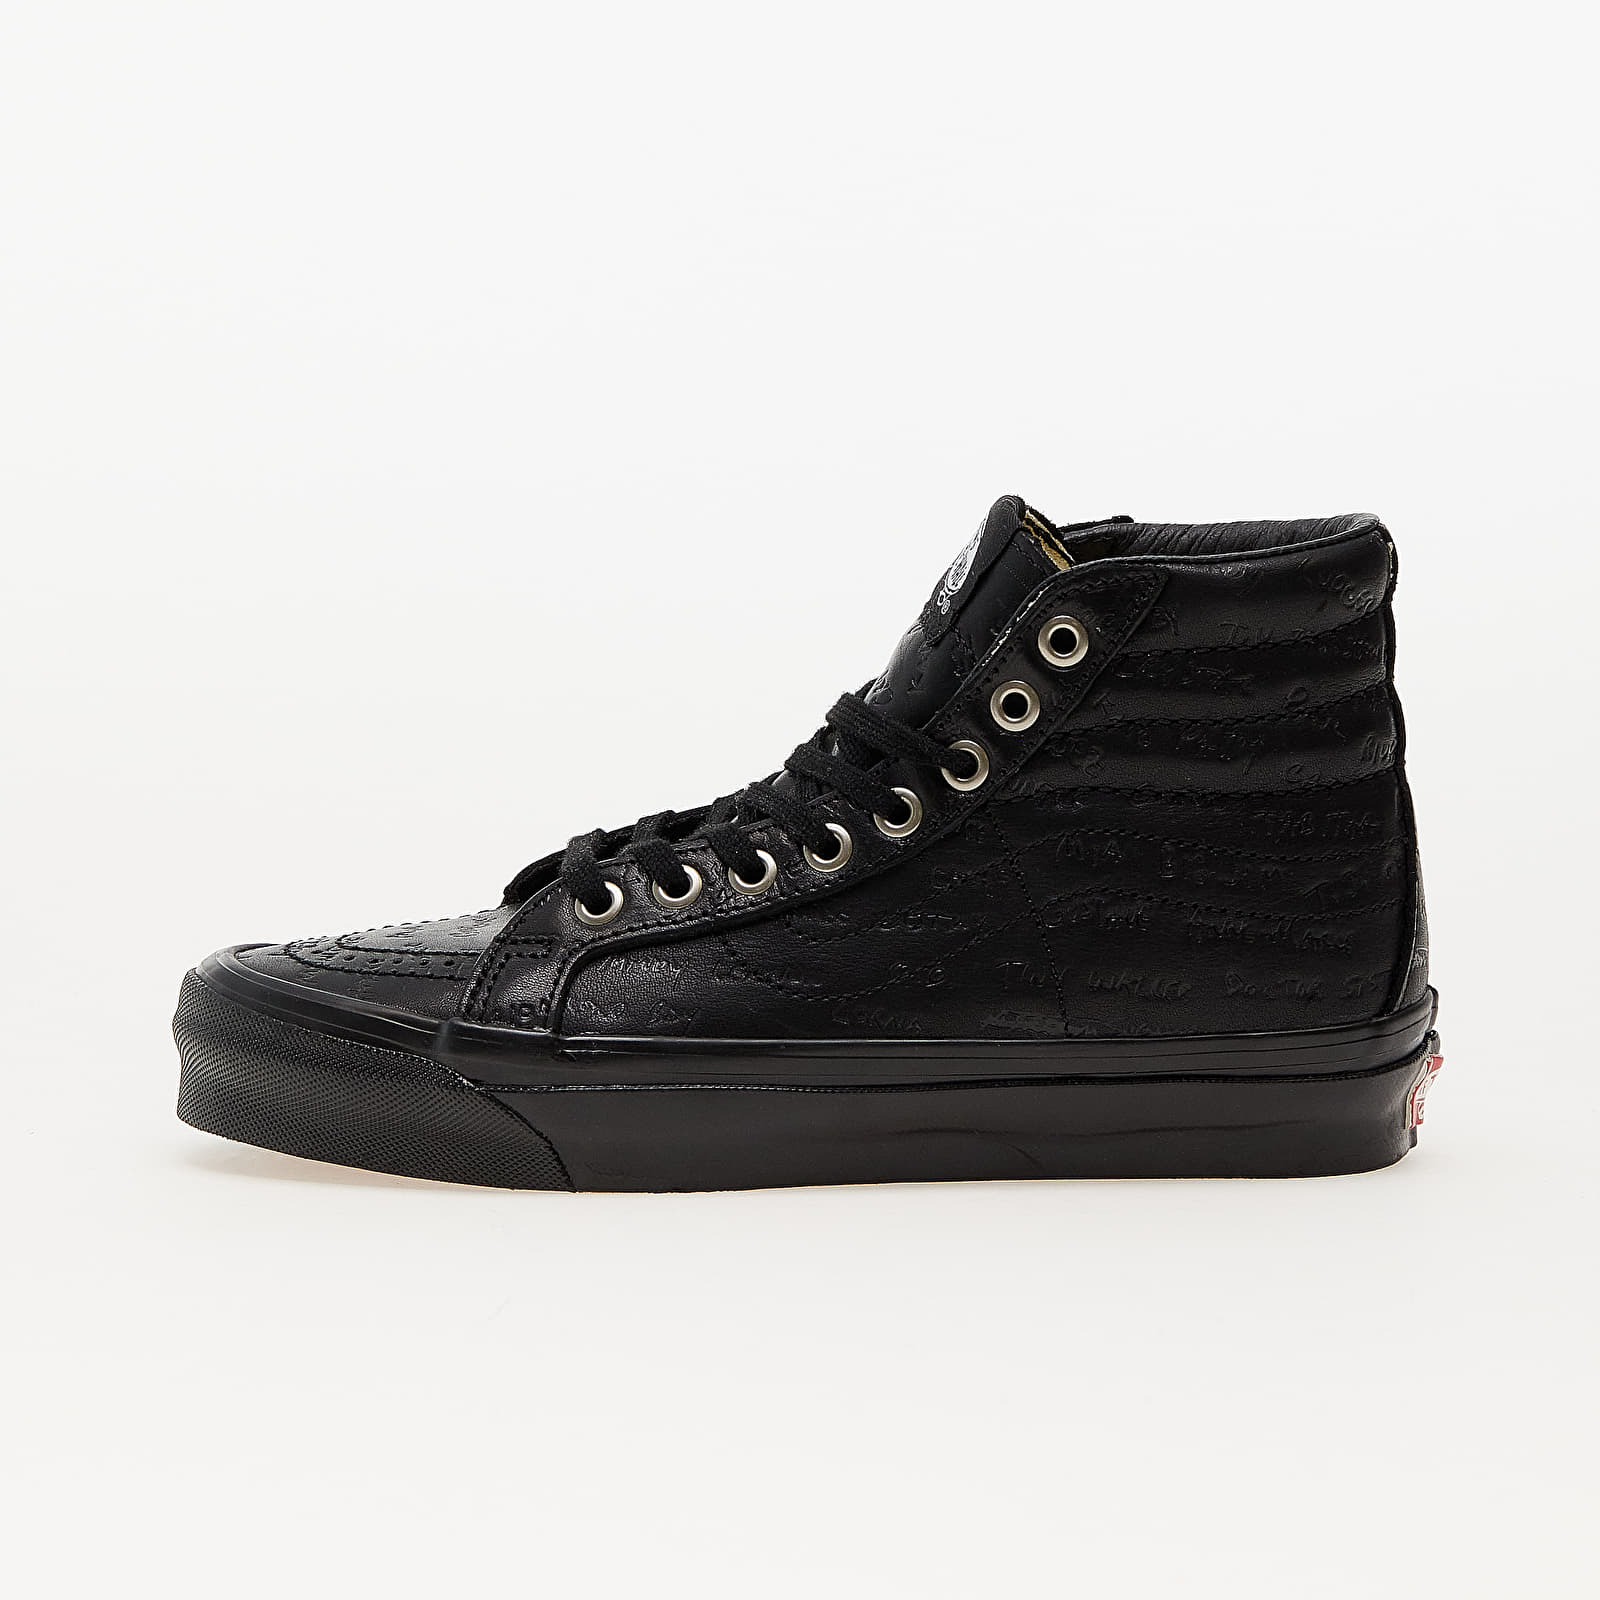 Ανδρικά παπούτσια Vans Vault OG Sk8-Hi LX (Jim Goldberg) Black Leather